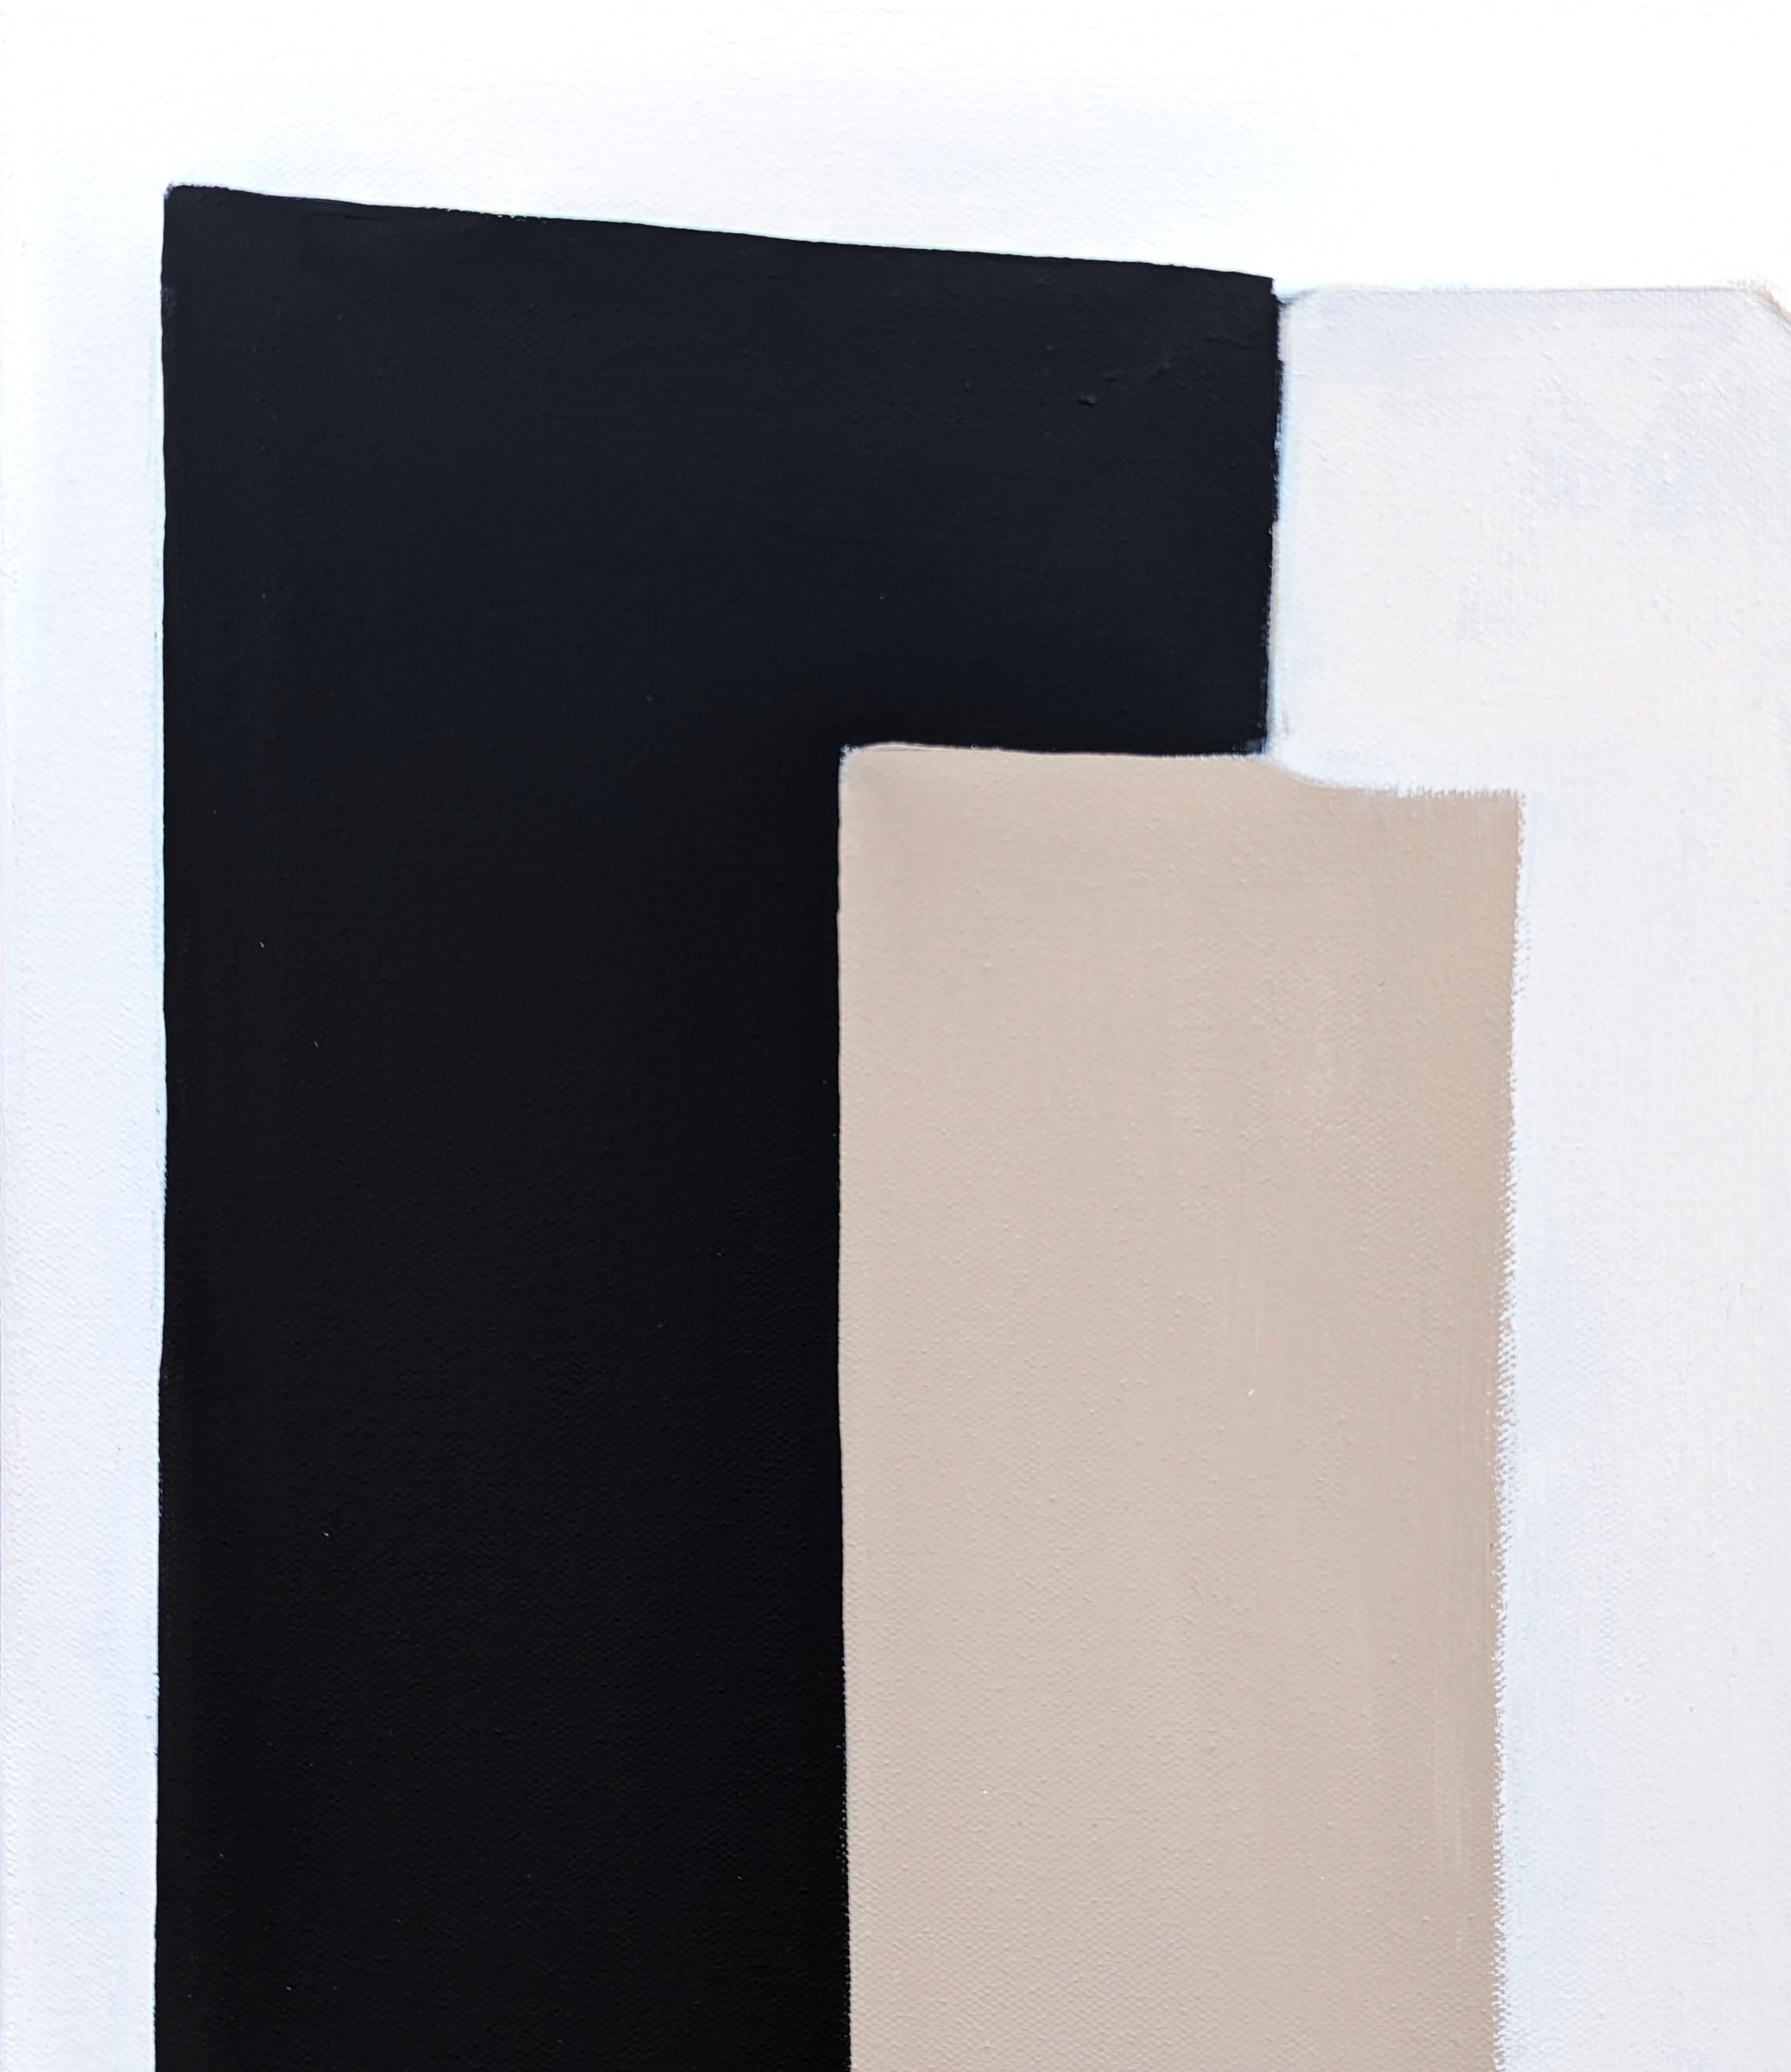 Peinture abstraite géométrique de l'artiste contemporaine Stephanie Beukers. L'œuvre présente des couches de formes arrondies en noir et en beige sur un fond clair. Signé et titré au verso. Actuellement non encadré, mais des options sont